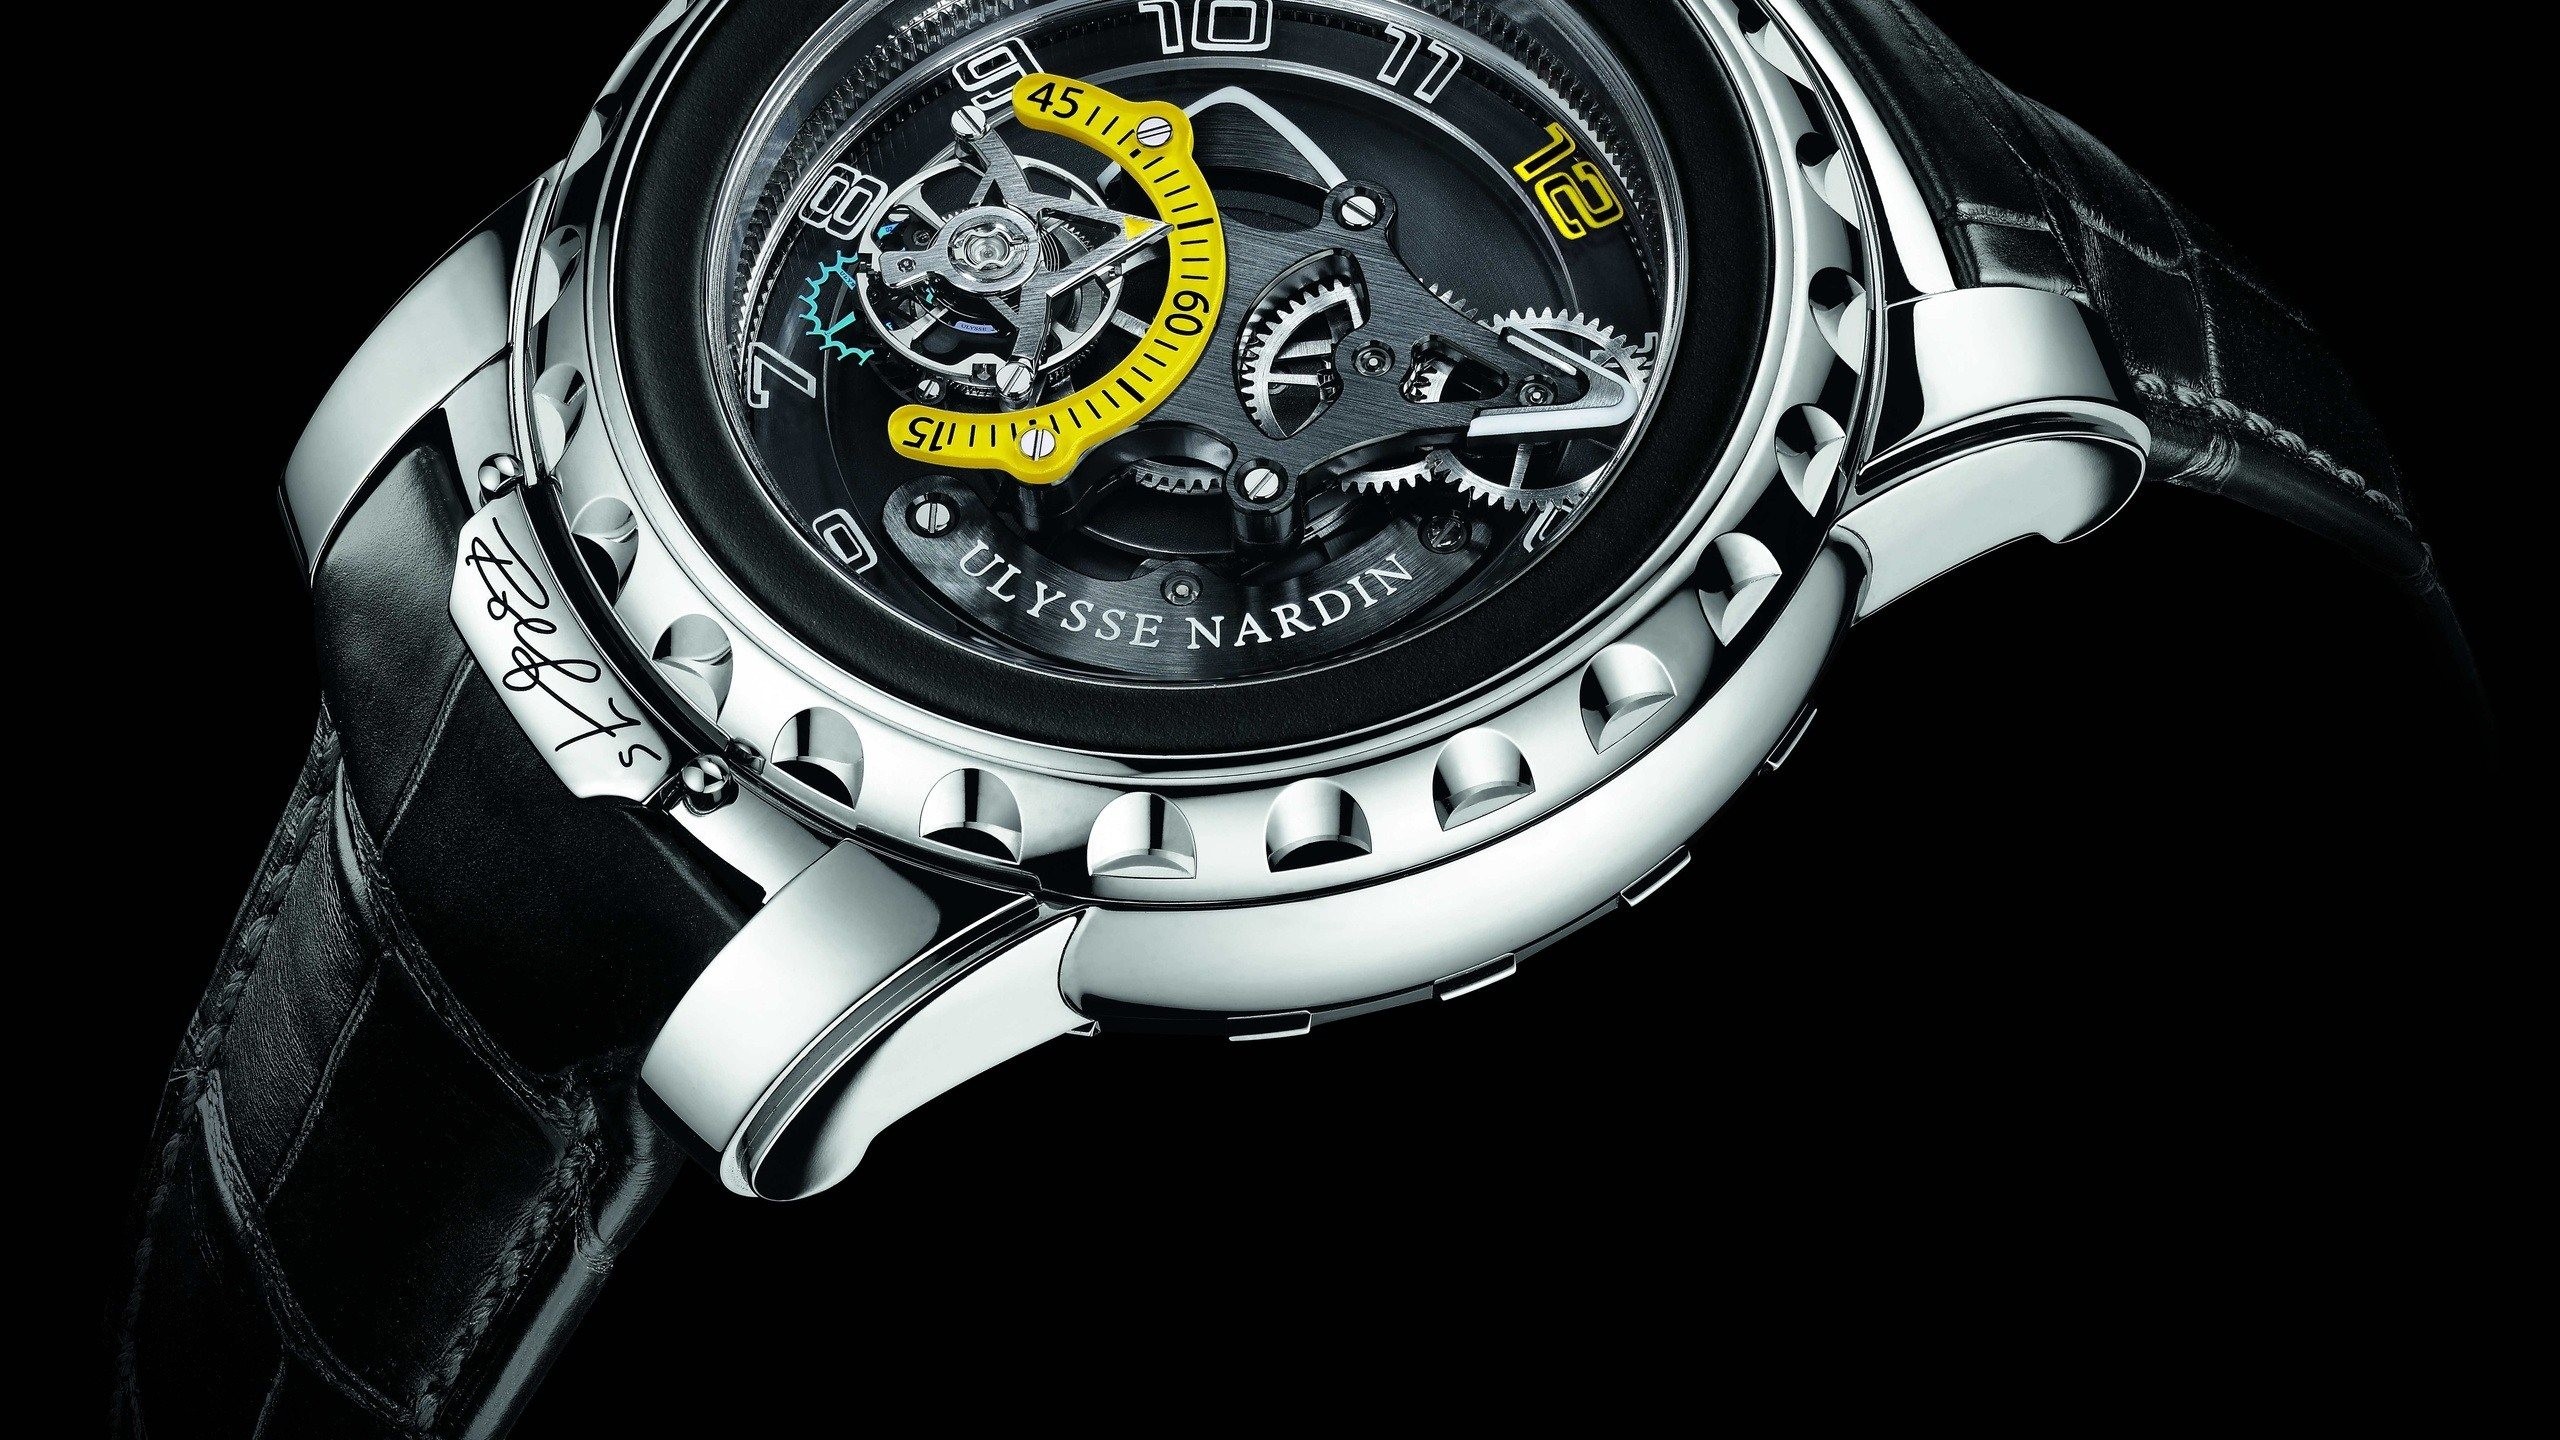 Watch Luxury Watches Ulysse Nardin 2560x1440